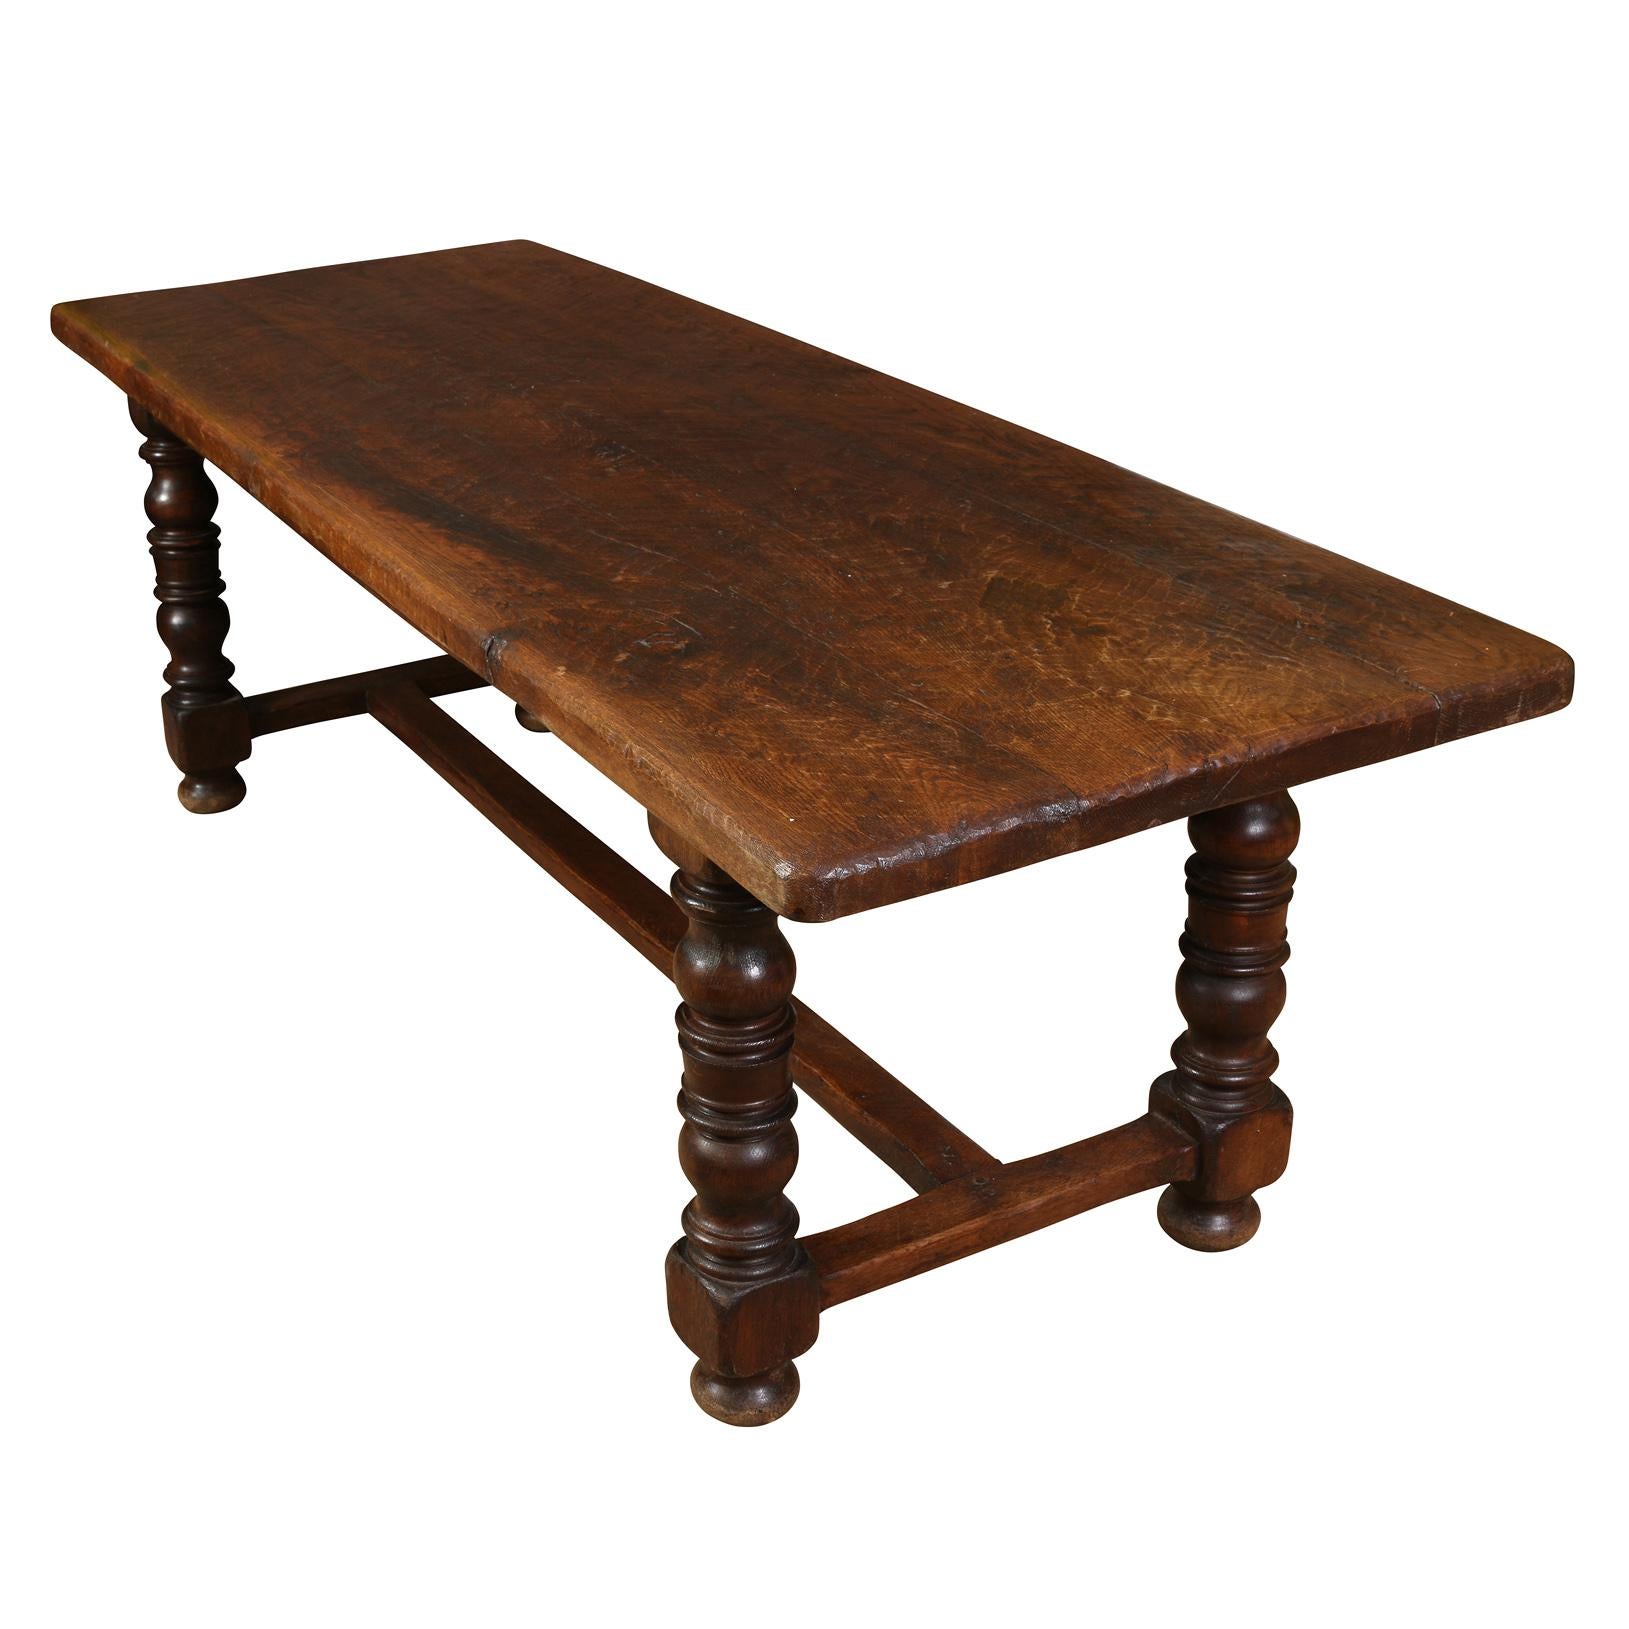 Cette table ajoutera une touche d'originalité à n'importe quelle pièce.  Fabriquée en chêne foncé, la table possède de généreux pieds tournés reliés par un châssis.  Le plateau a des coins légèrement arrondis et la finition a vieilli jusqu'à